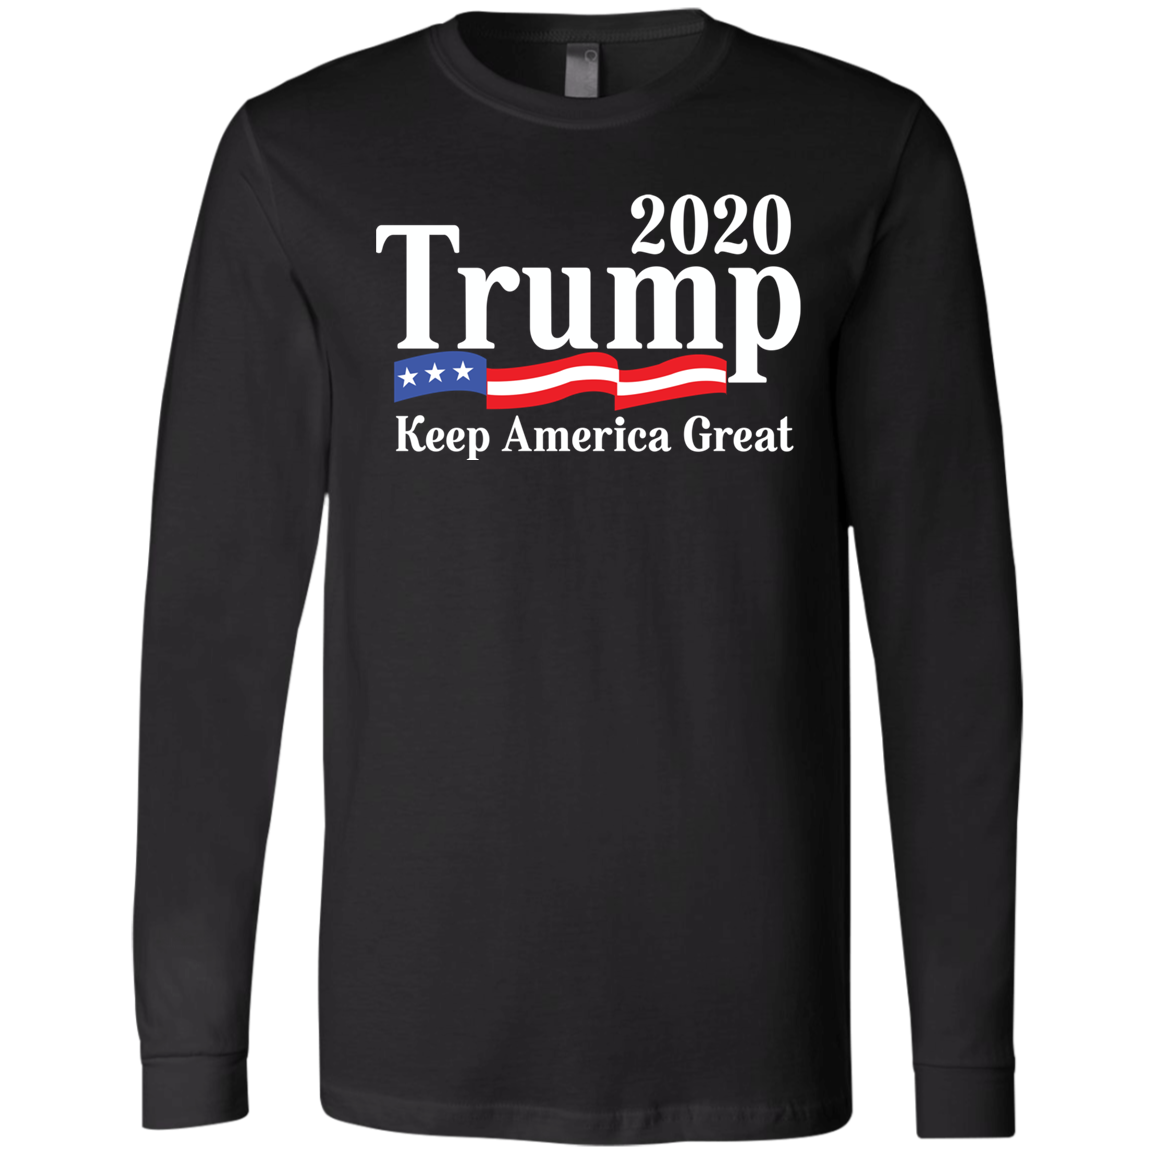 Trump 2020 Men's Jersey LS T-Shirt - Trumpshop.net